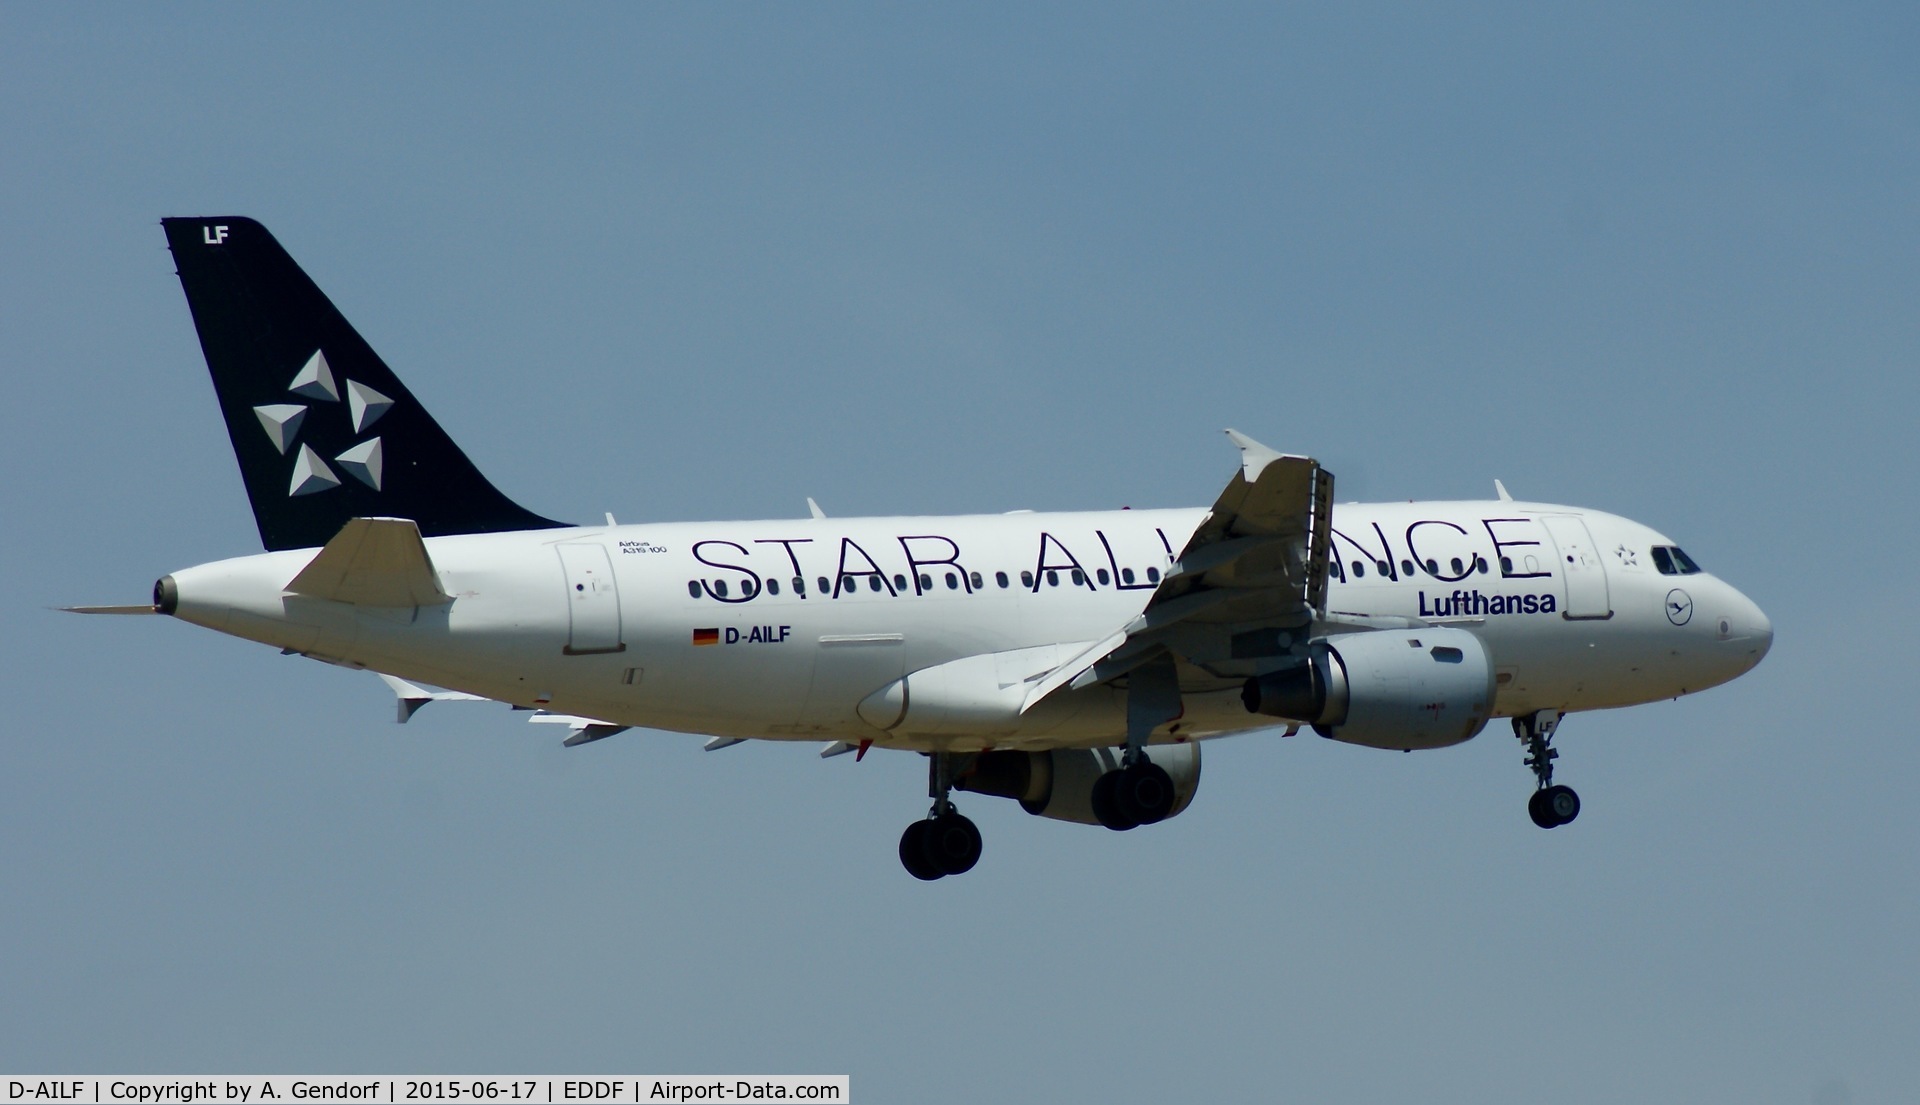 D-AILF, 1996 Airbus A319-114 C/N 636, Lufthansa (Star Alliance cs.), is here on final at Frankfurt Rhein/Main